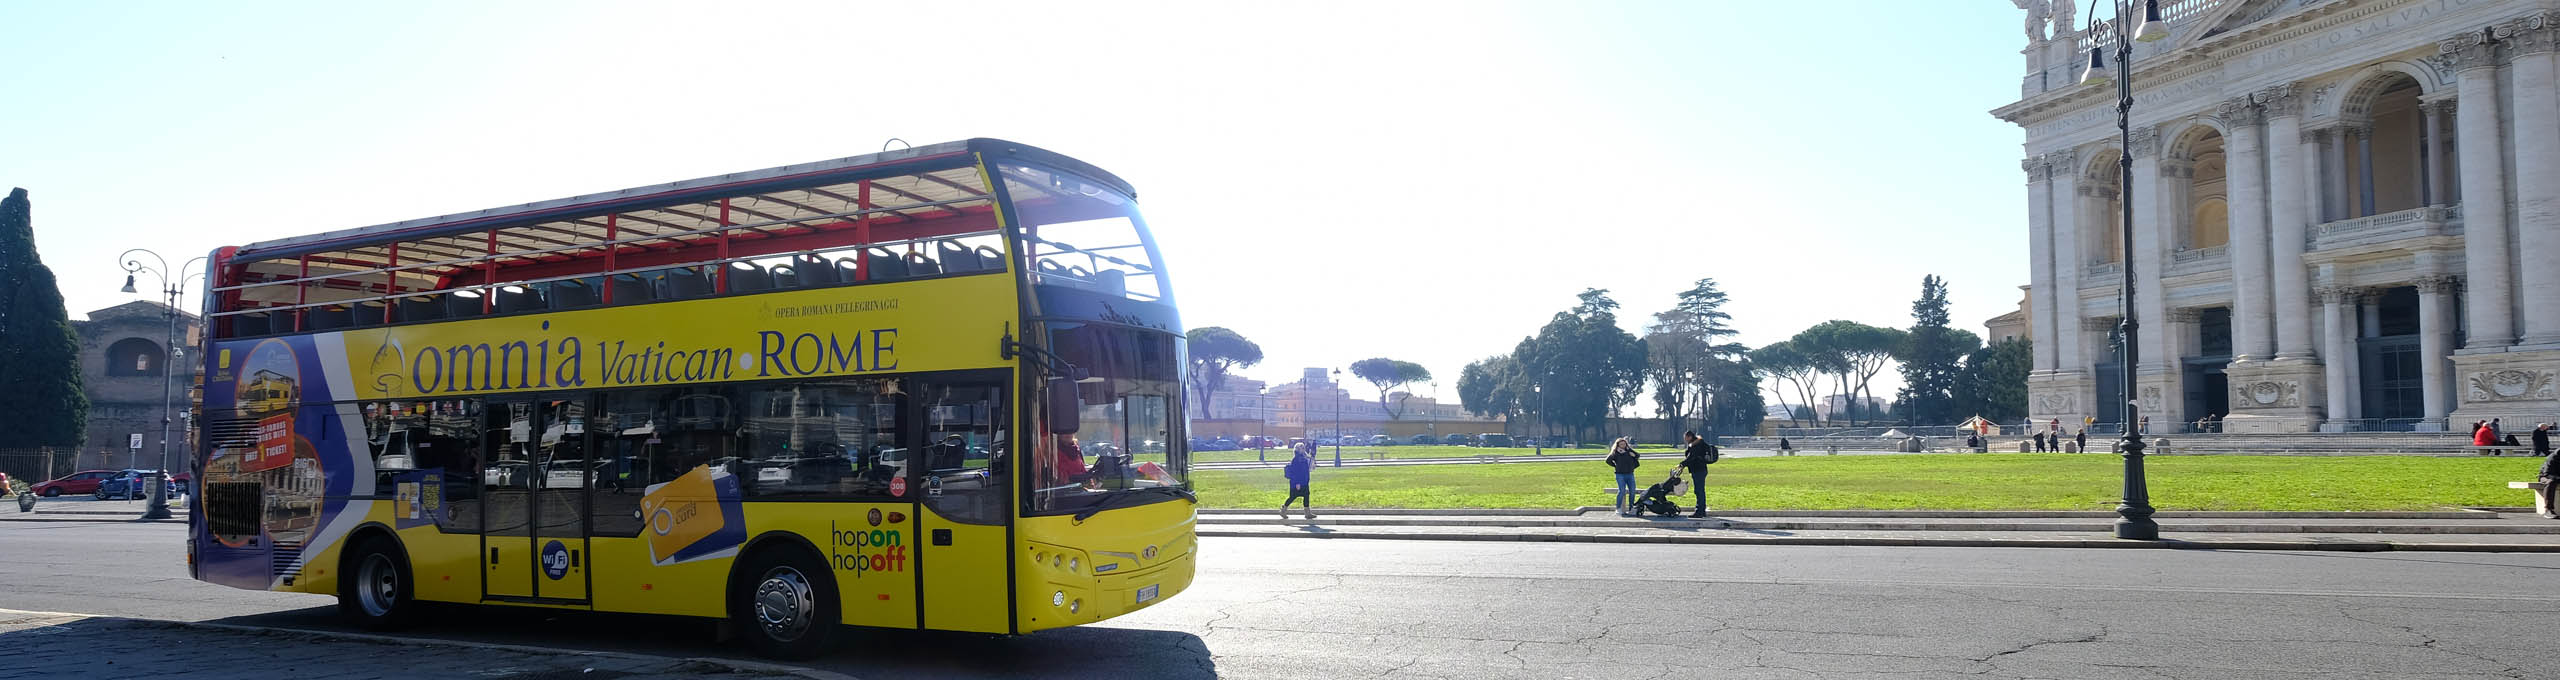 tour de rome en bus touristique